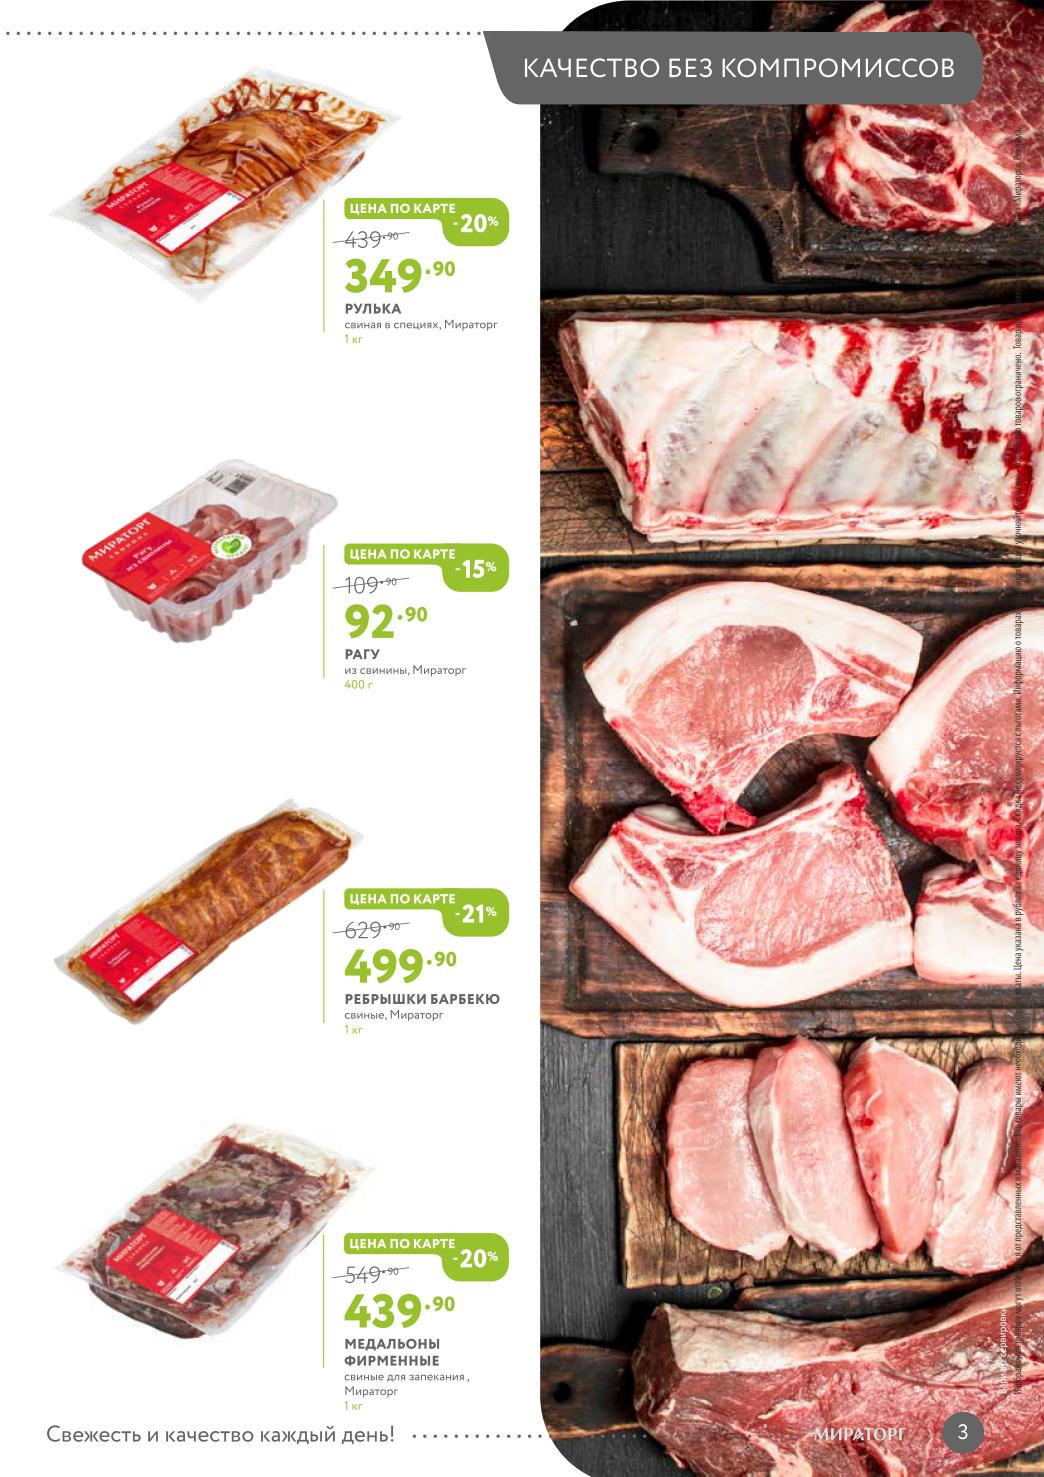 цены на мясо в супермаркете 